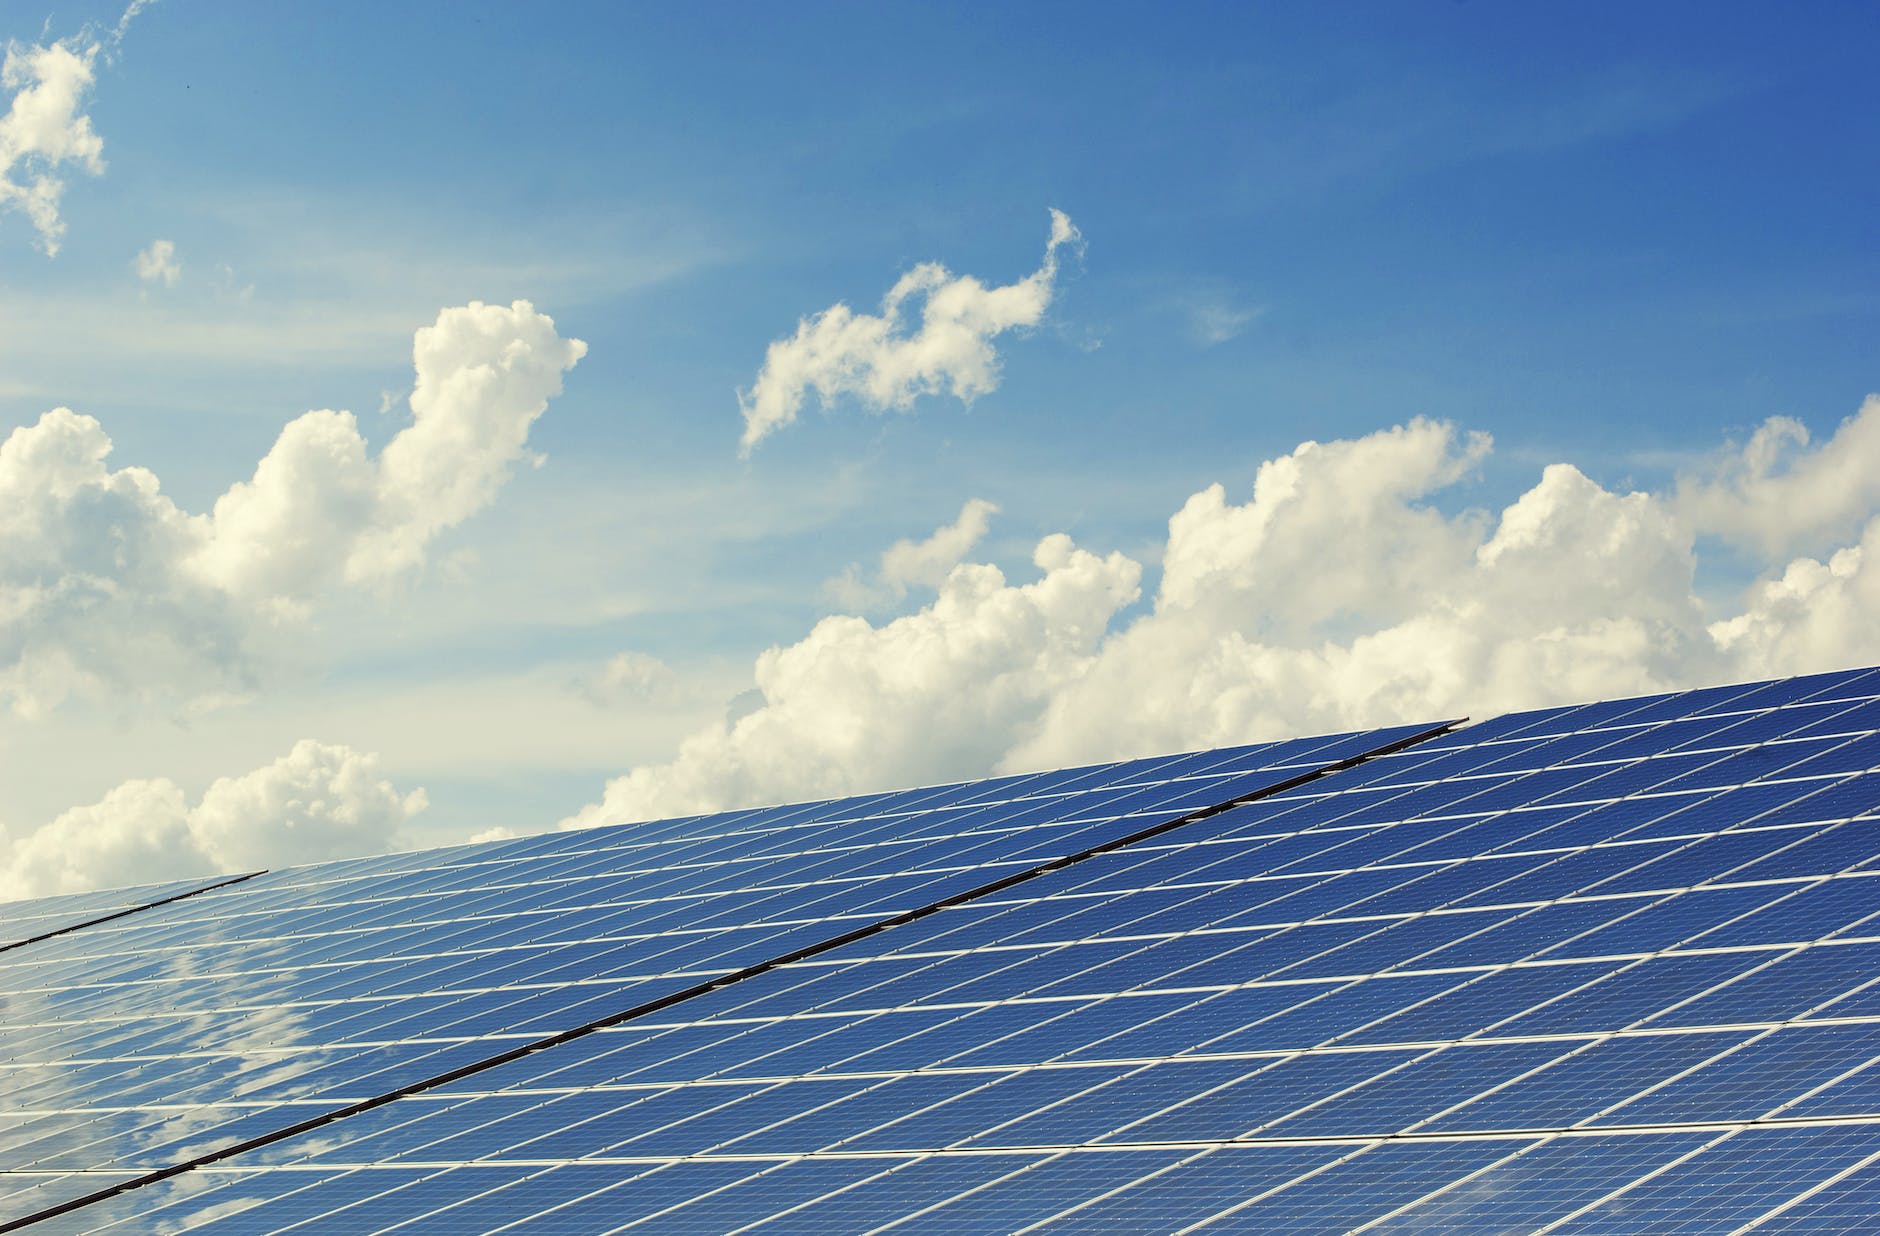 Solarpaket I: So will die Bundesregierung den Ausbau der Fotovoltaik beschleunigen